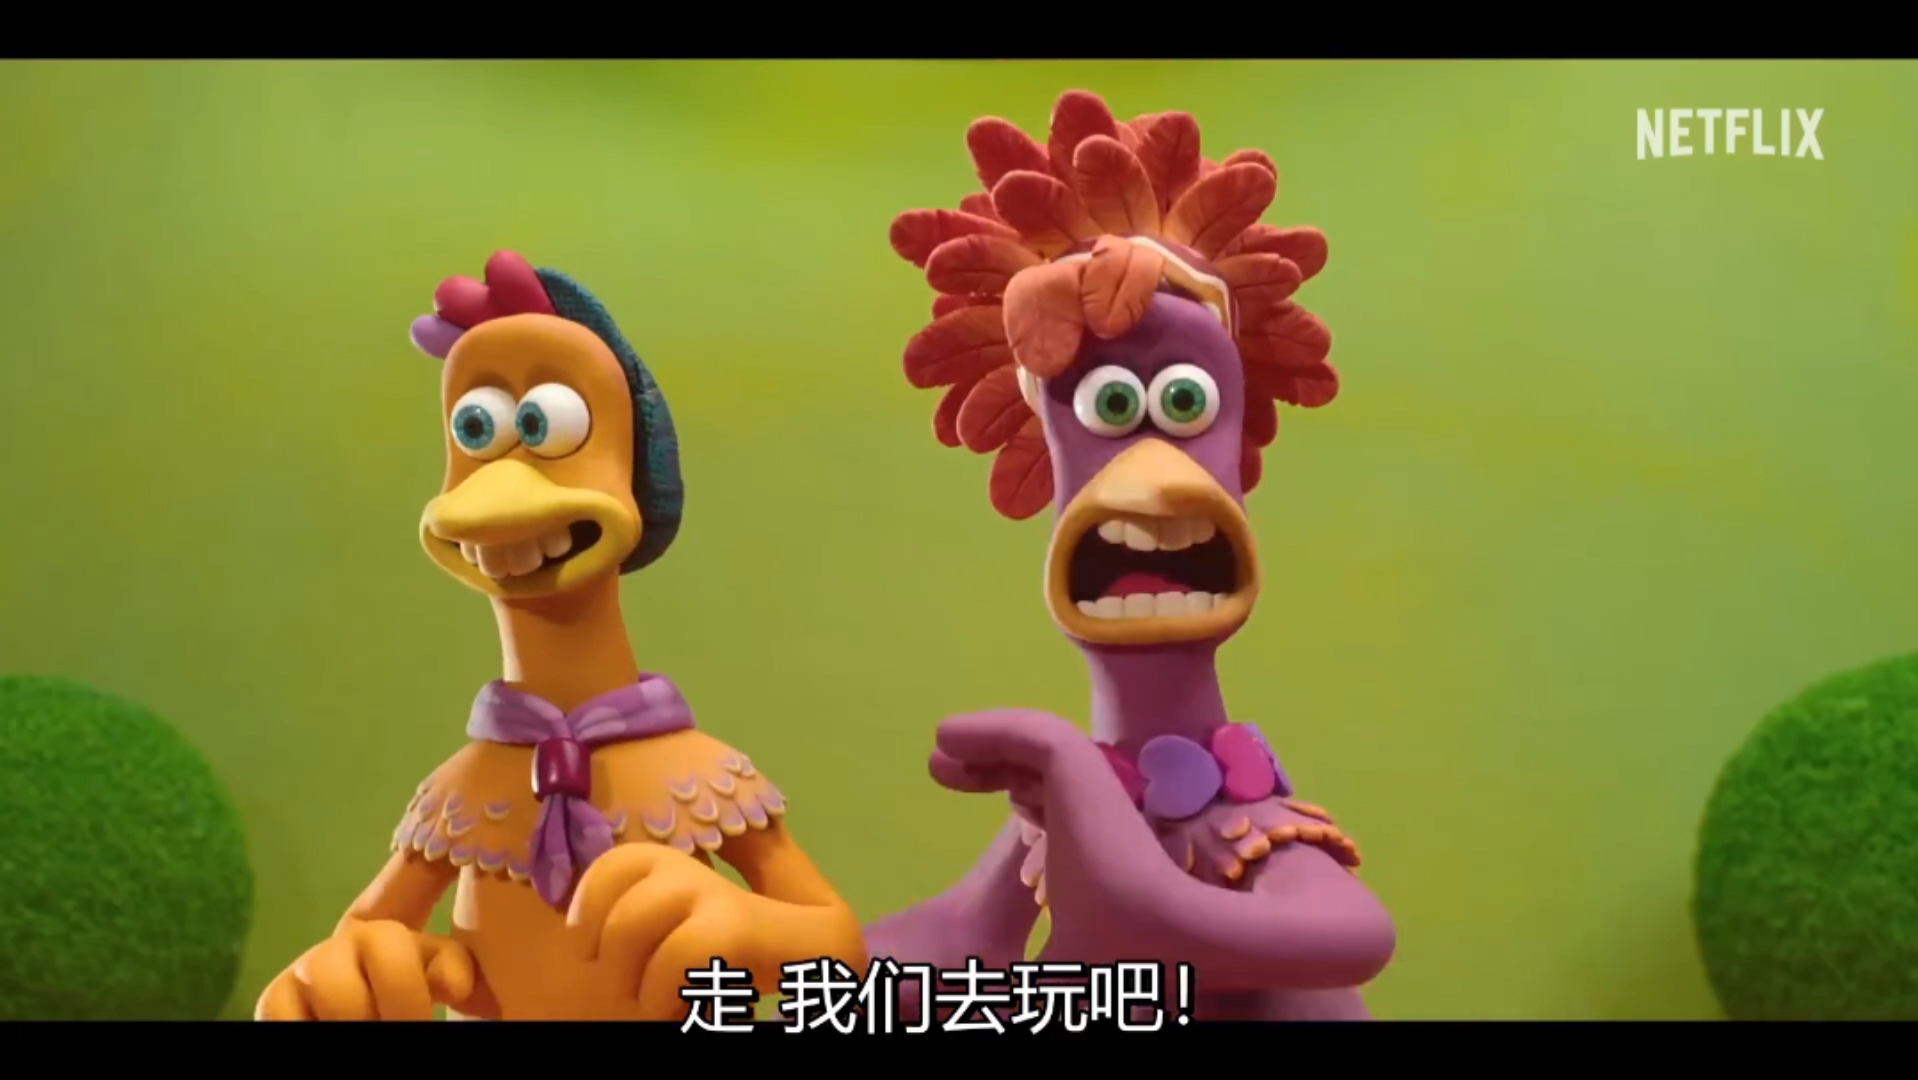 《小鸡快跑2》:搞笑又刺激的预告片,全程高能!